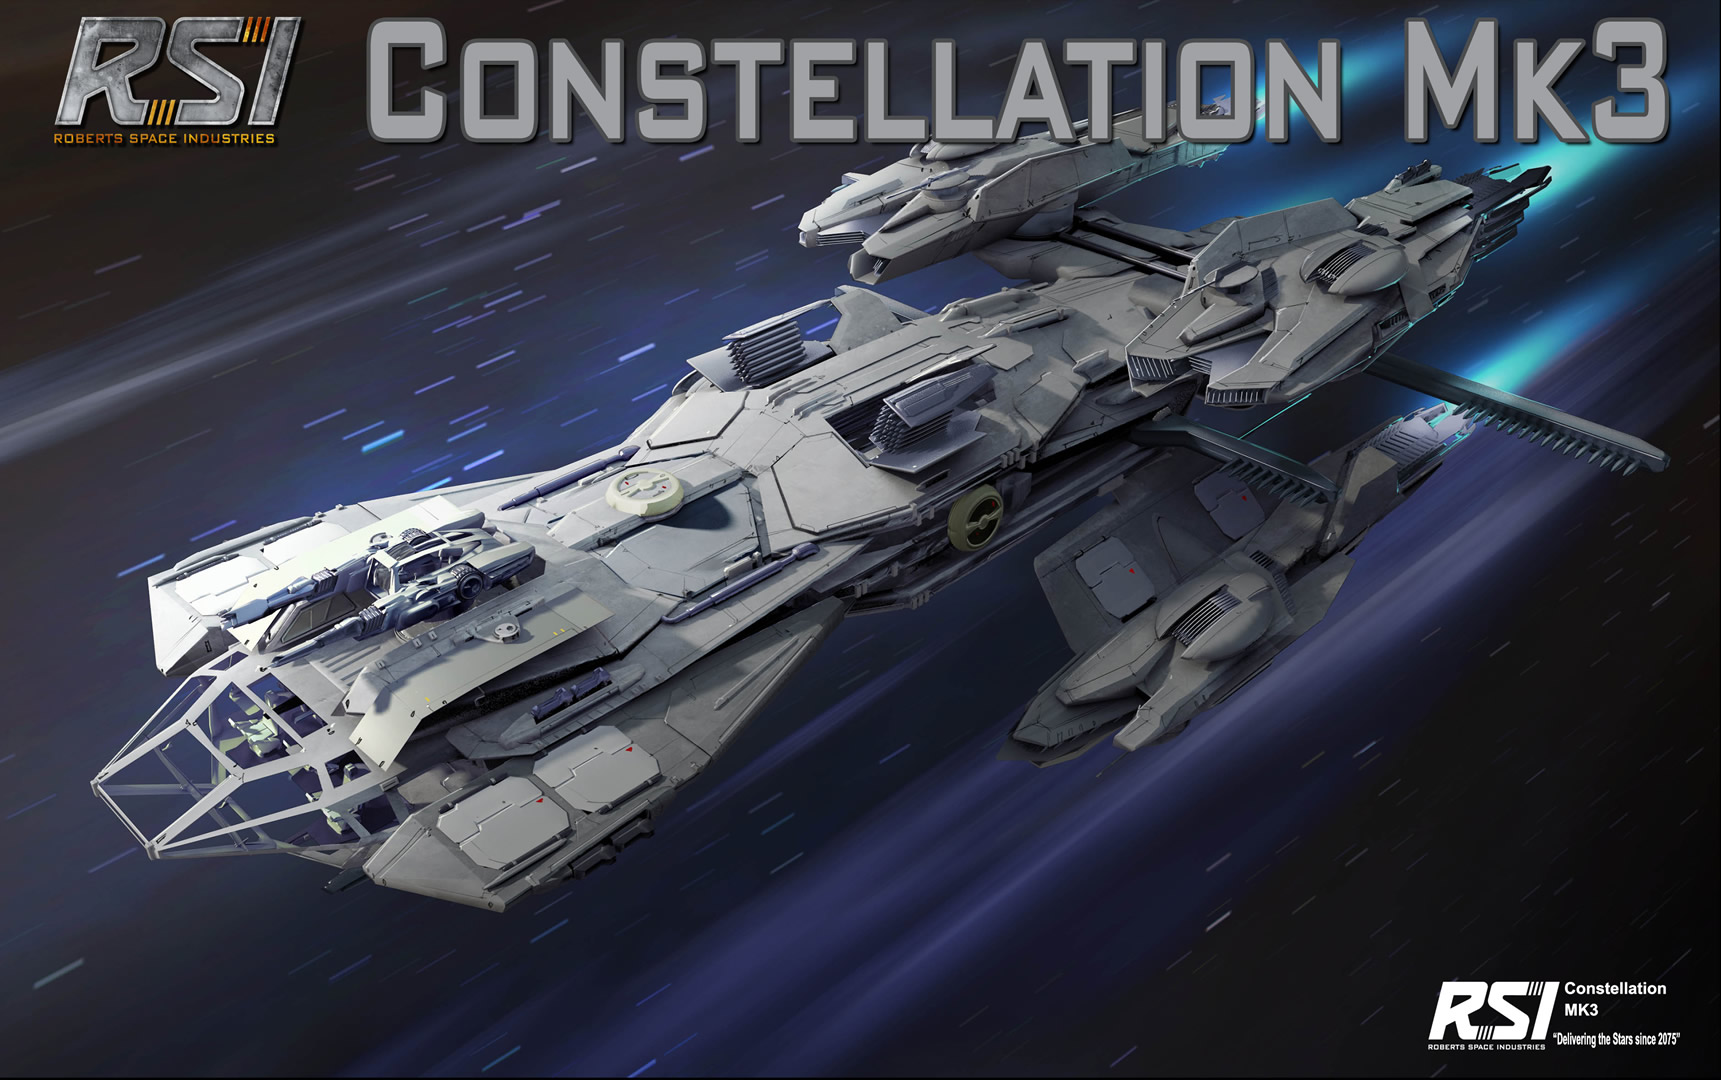 Constellation_Mk3